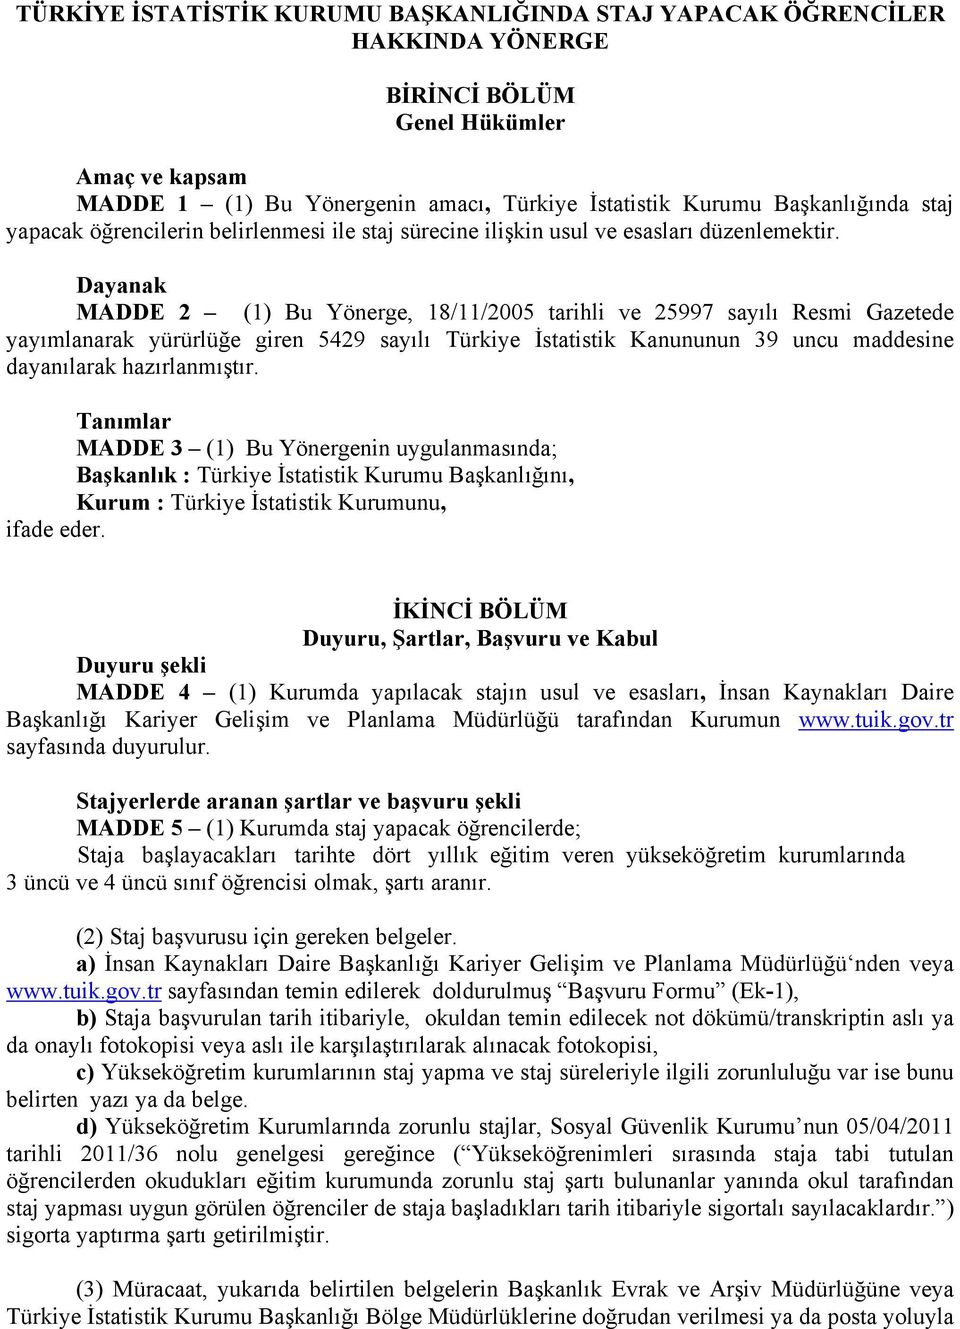 Dayanak MADDE 2 (1) Bu Yönerge, 18/11/2005 tarihli ve 25997 sayılı Resmi Gazetede yayımlanarak yürürlüğe giren 5429 sayılı Türkiye İstatistik Kanununun 39 uncu maddesine dayanılarak hazırlanmıştır.